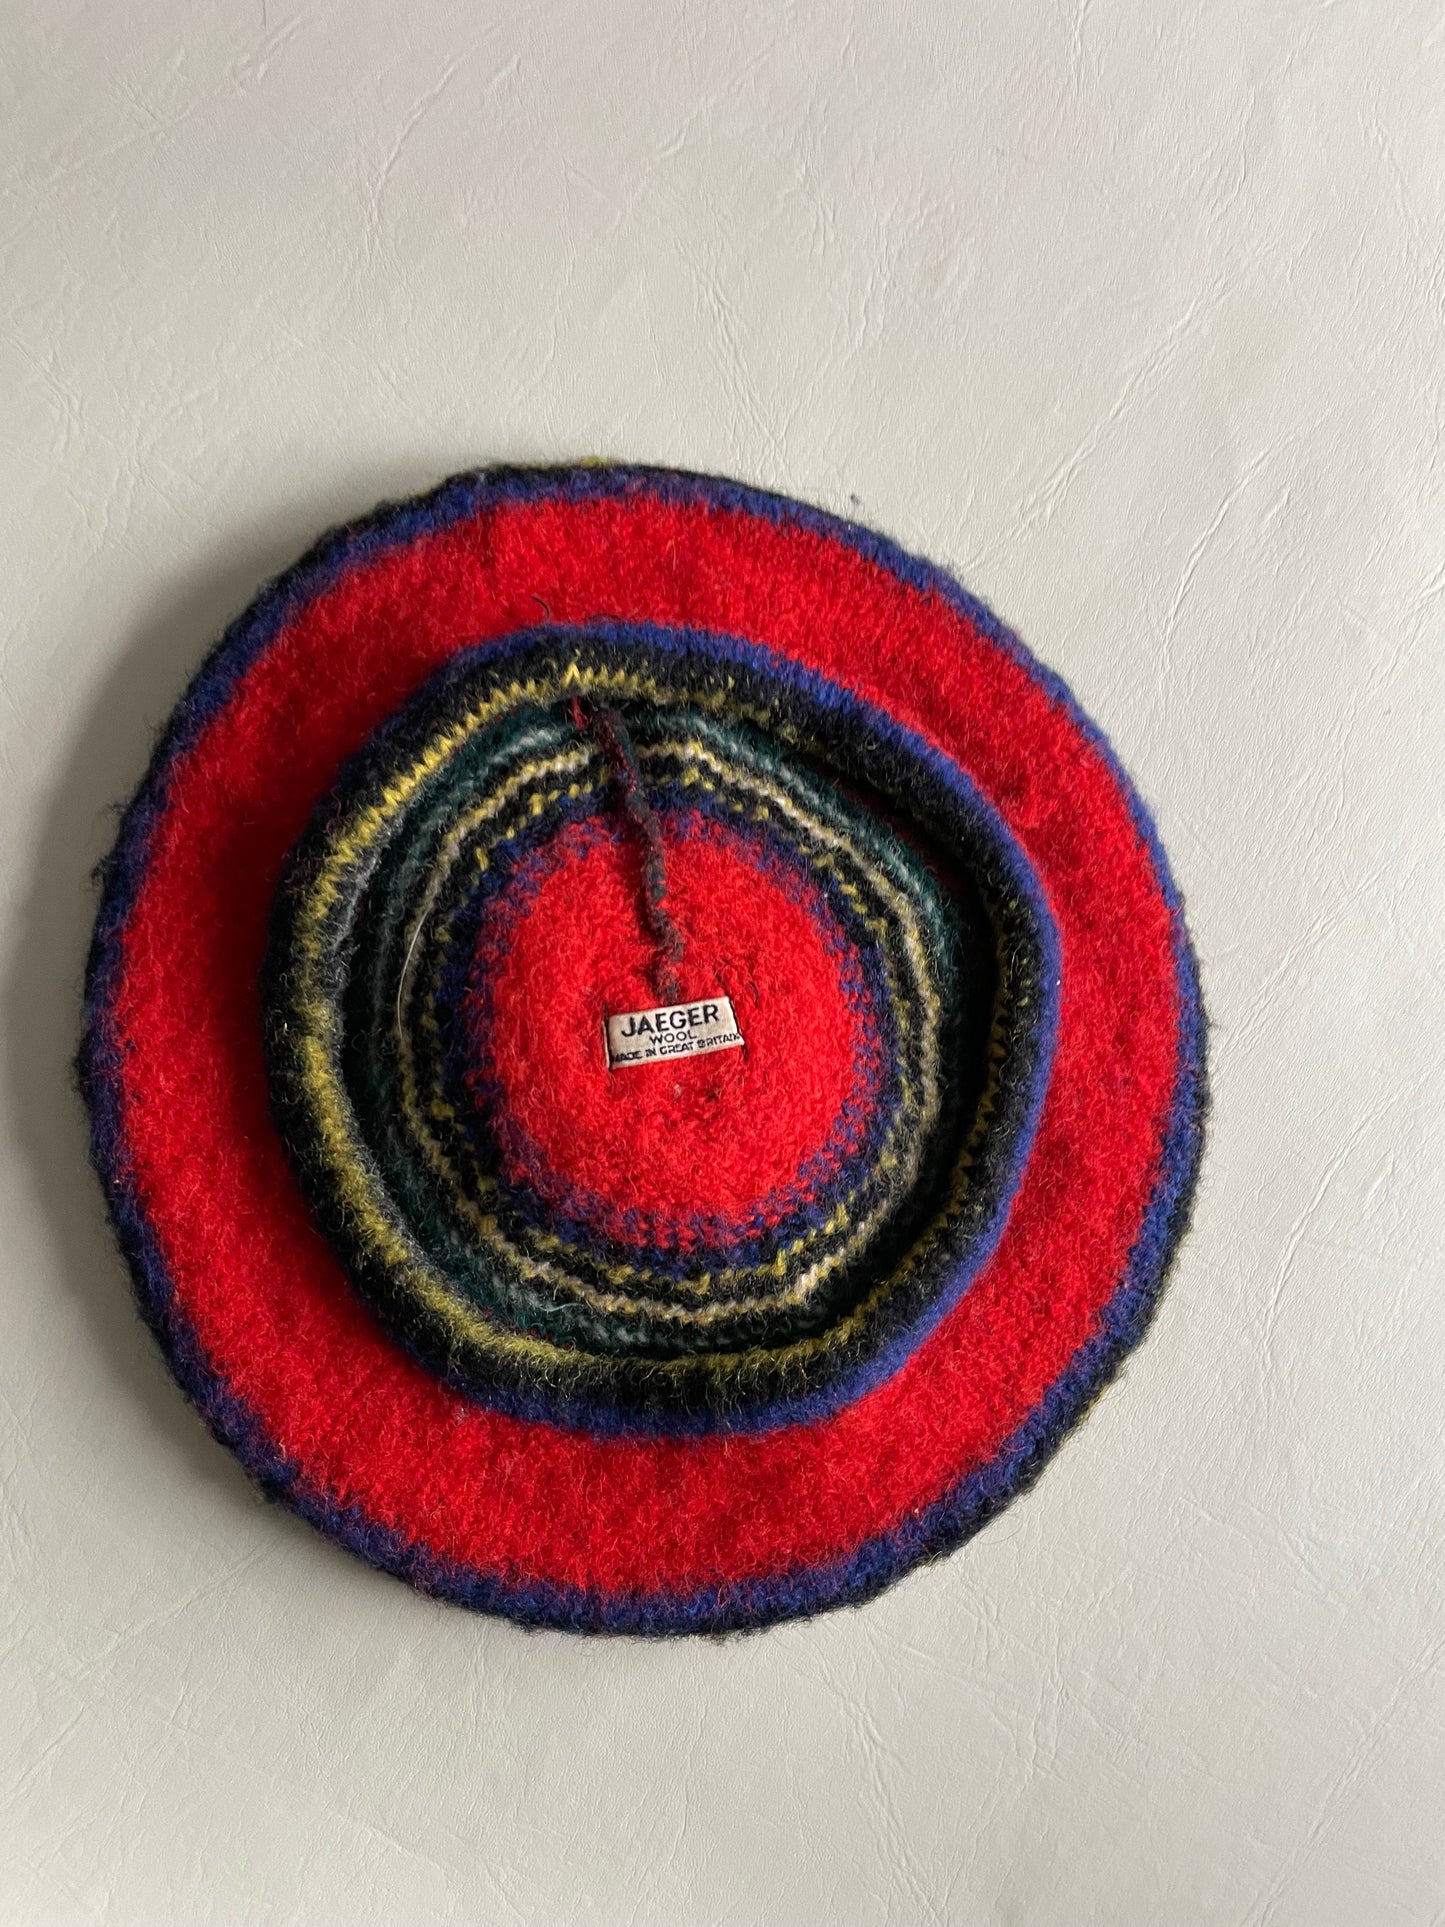 Jaeger Vintage Red Stripe Wool Beret Hat with Pom Pom